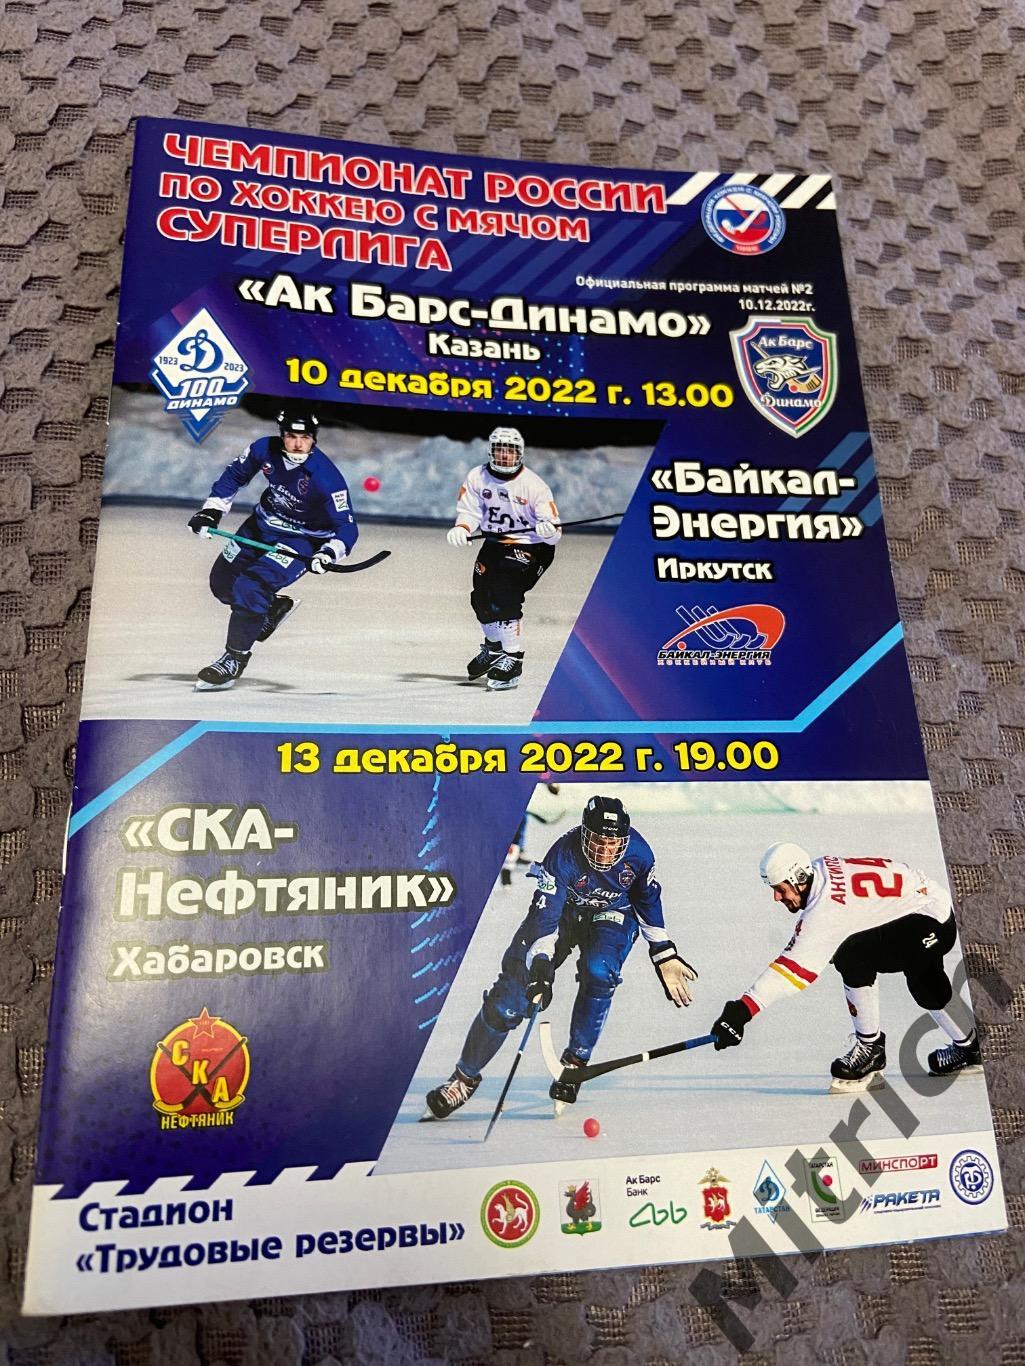 Ак Барс-Динамо Казань - СКА-Нефтяник Хабаровск, Байкал-Энергия Иркутск 2022/2023